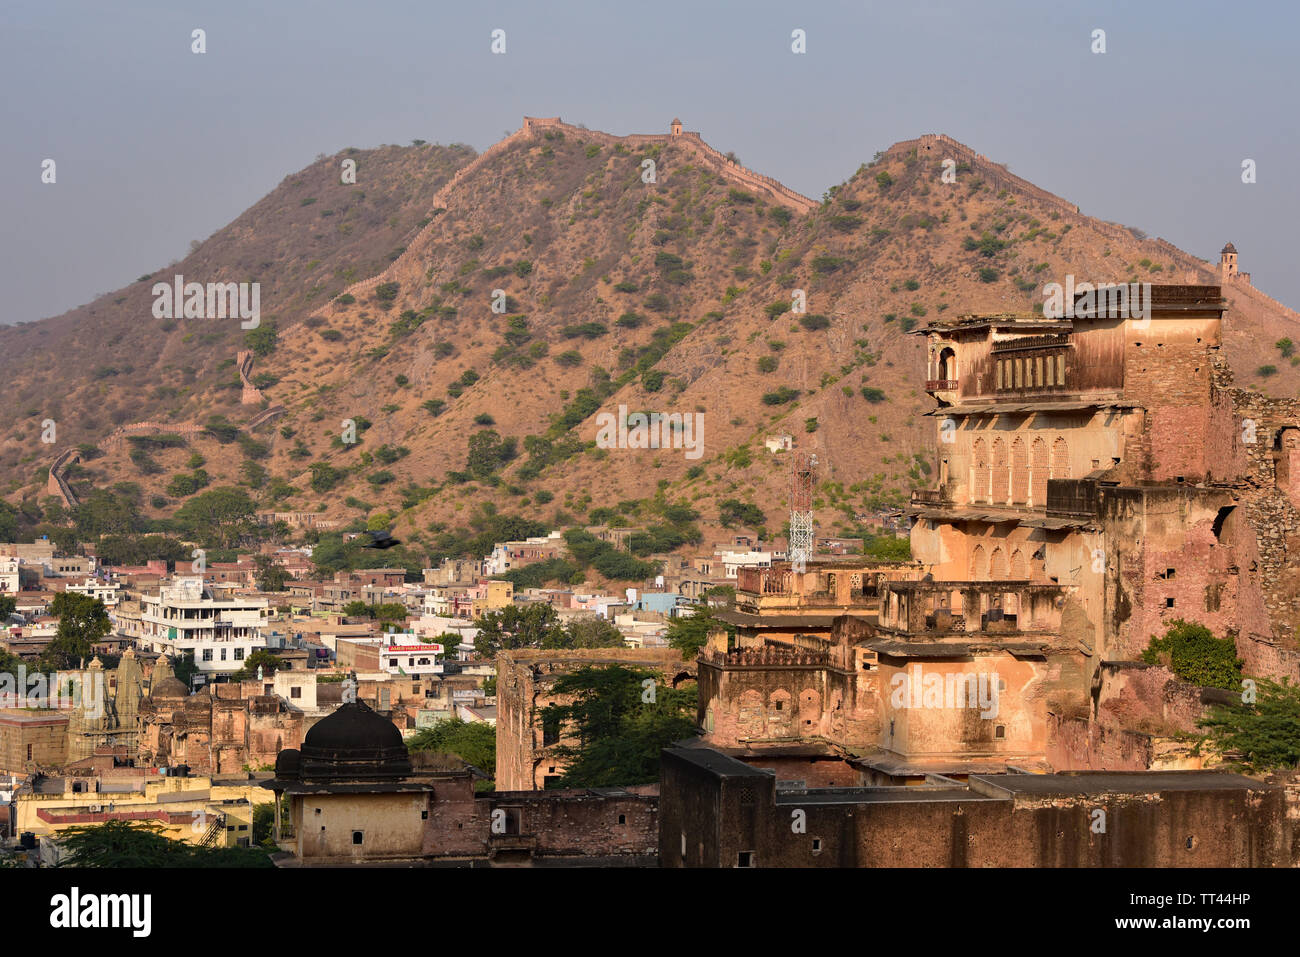 Massiven Befestigungsmauern von Bernstein (Amer) Fort folgen den Konturen eines natürlichen schroffen Bergrücken, Amer, Aravalli Hills, Rajasthan, Indien, Asien. Stockfoto